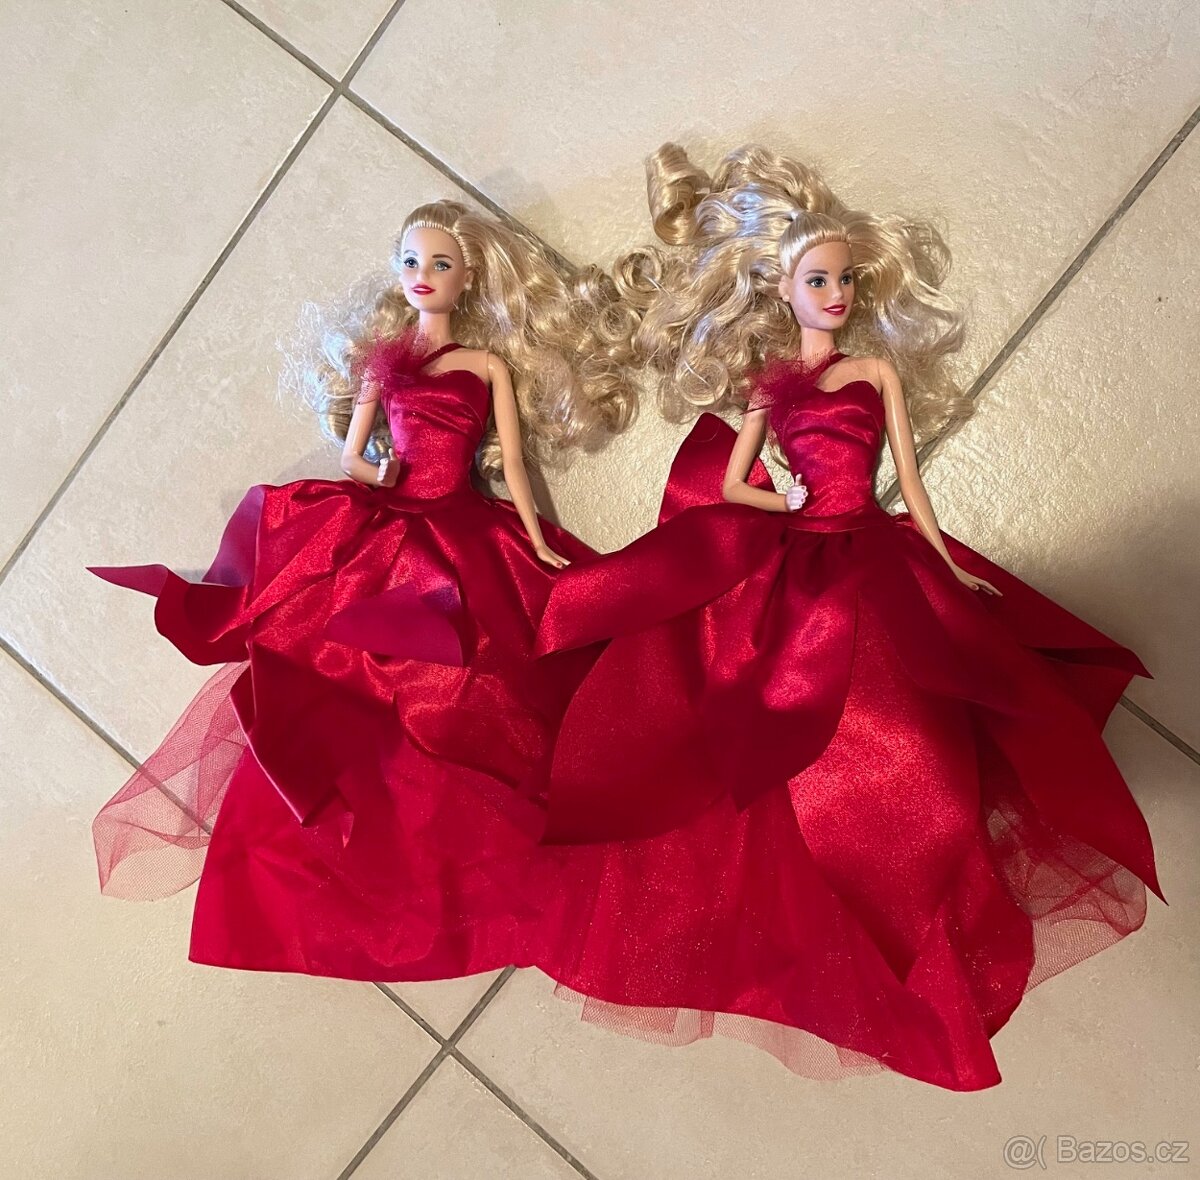 Dvě Barbie ze sběratelské kolekce